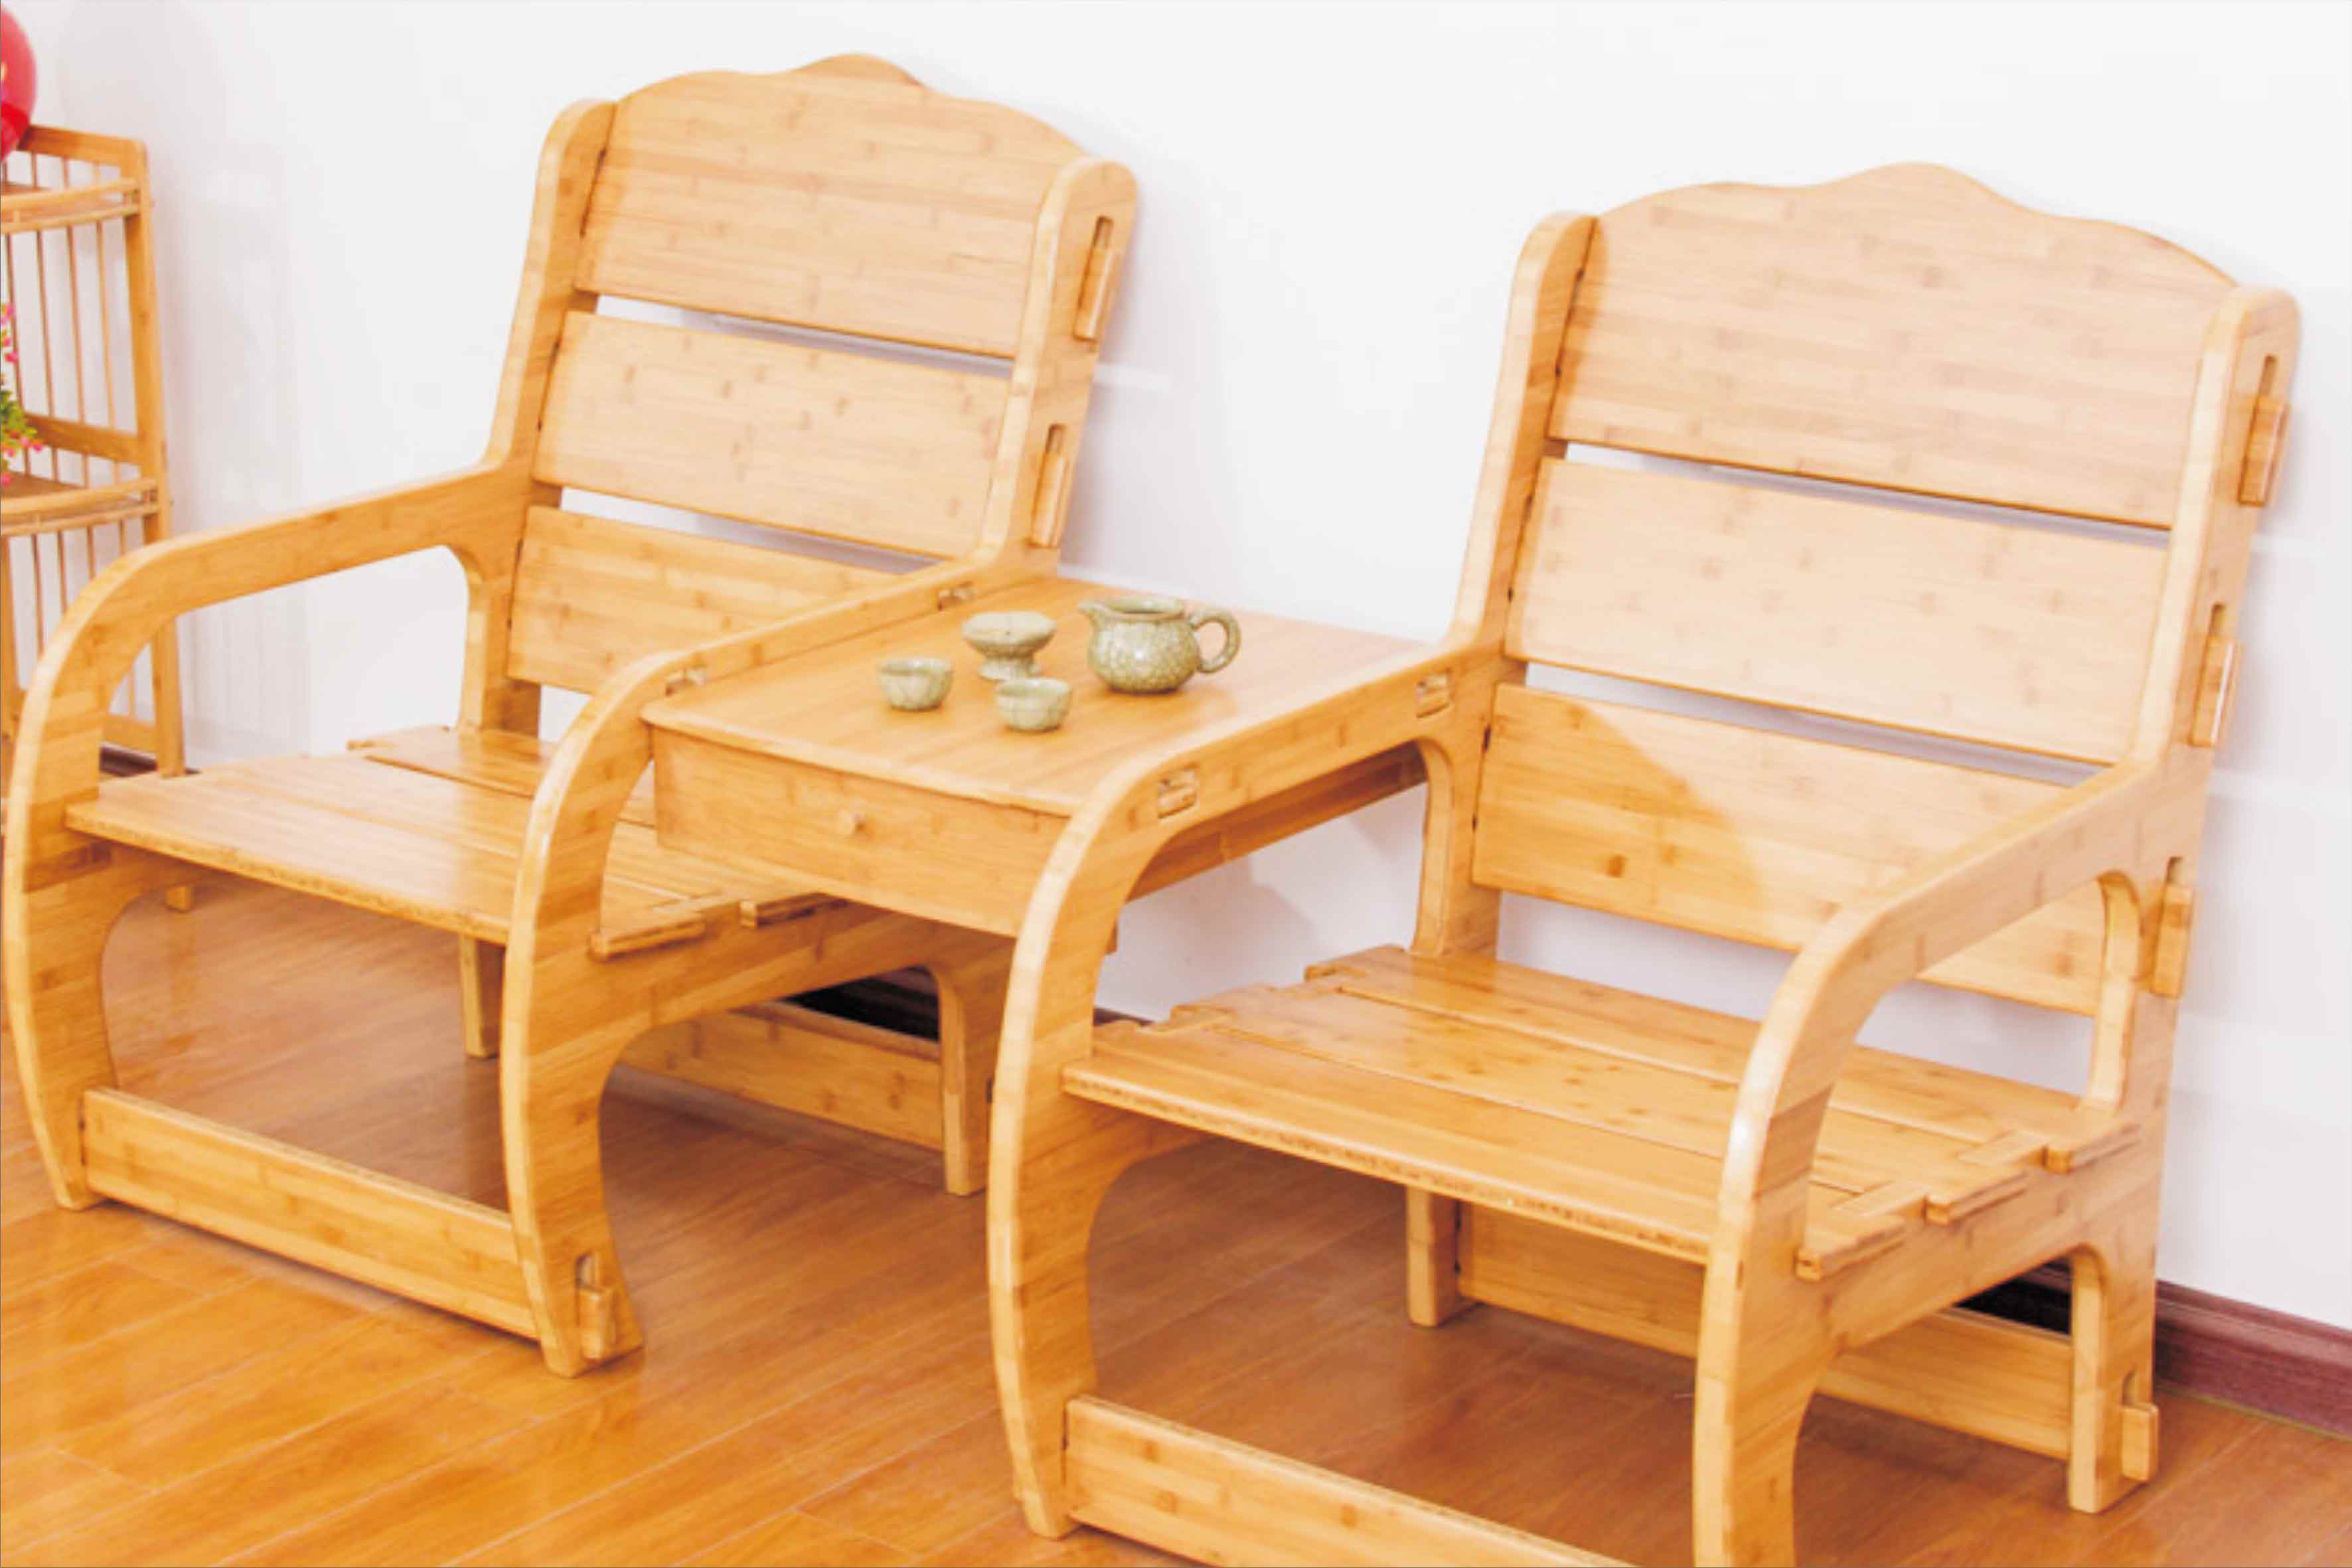 无金属全竹拼接商务椅 家用双人沙发竹椅 内外贸加工定制DIY组合